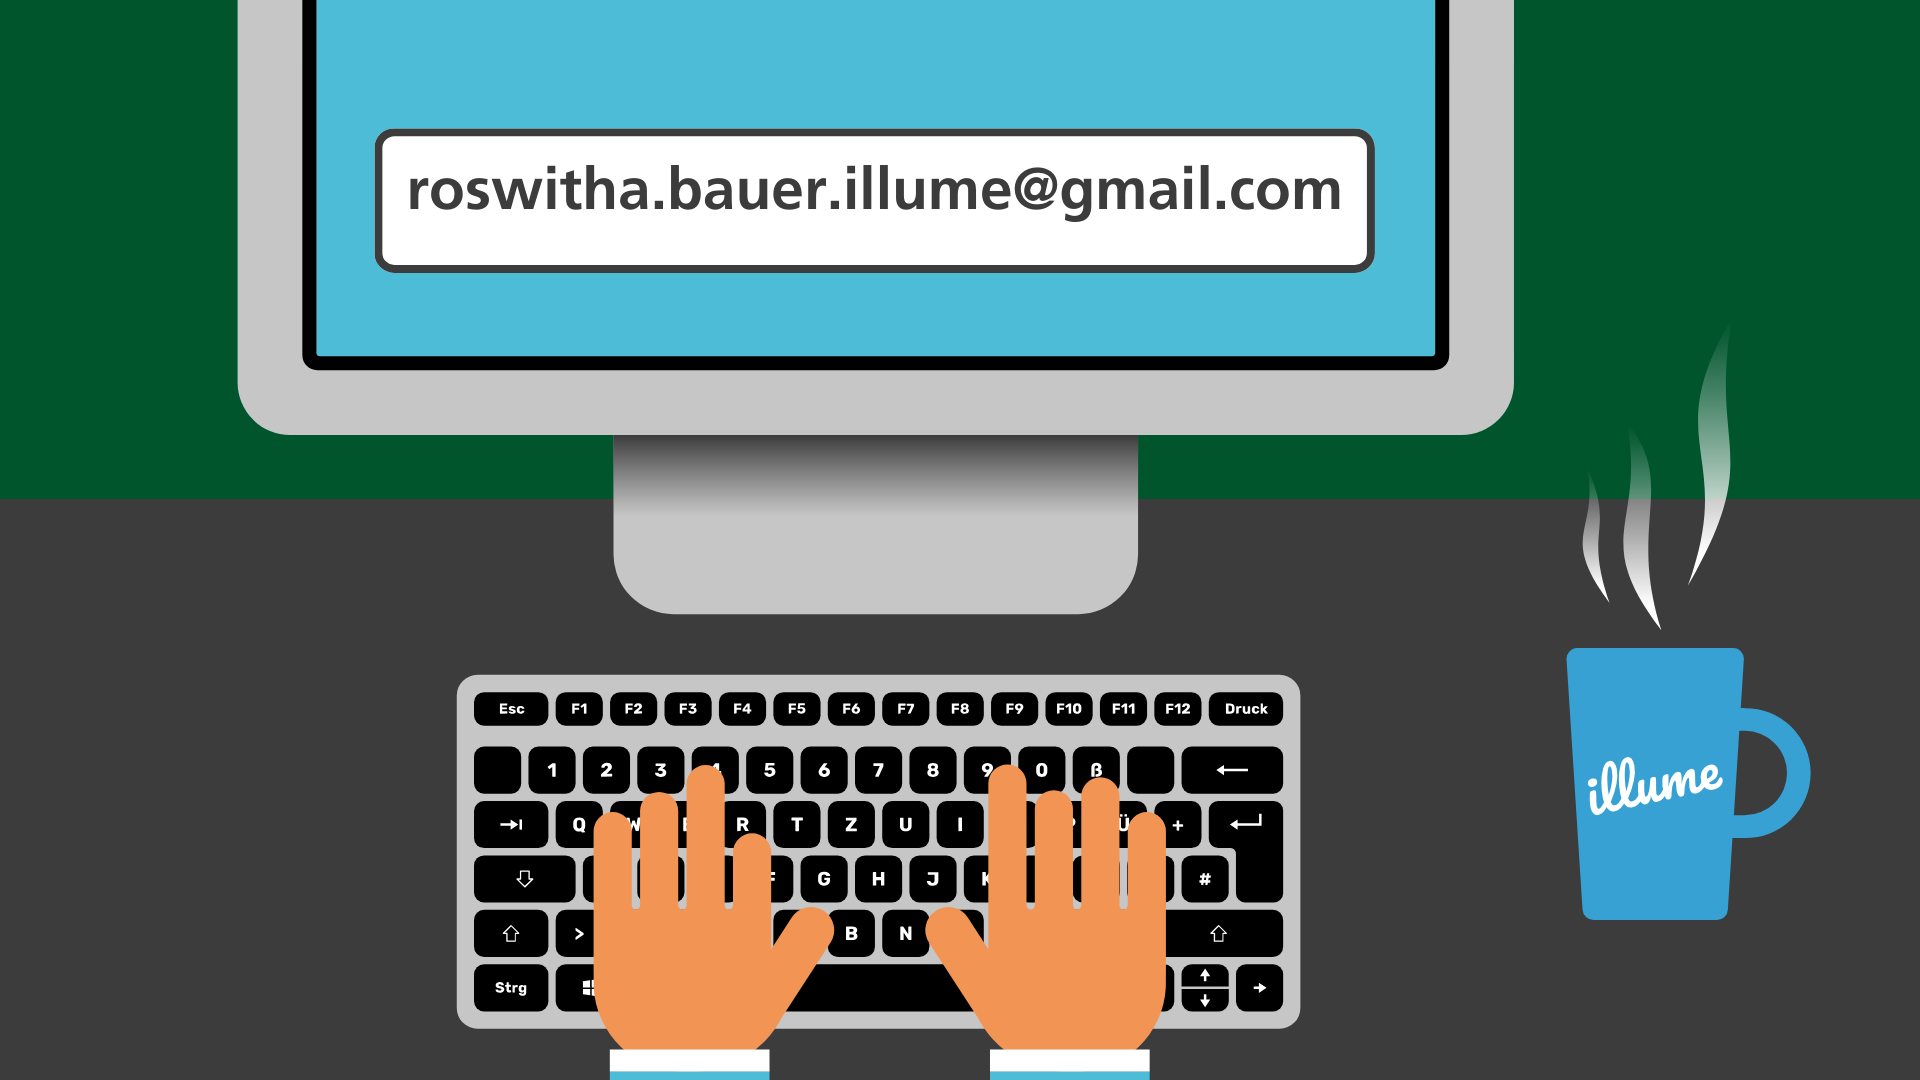 Ein gezeichneter Bildschirm steht auf einem Schreibtisch. Davor ist eine Tastatur, auf der zwei Hände etwas tippen. Auf dem Bildschirm steht eine Emailadresse: Roswitha.bauer.illume@gmail.com